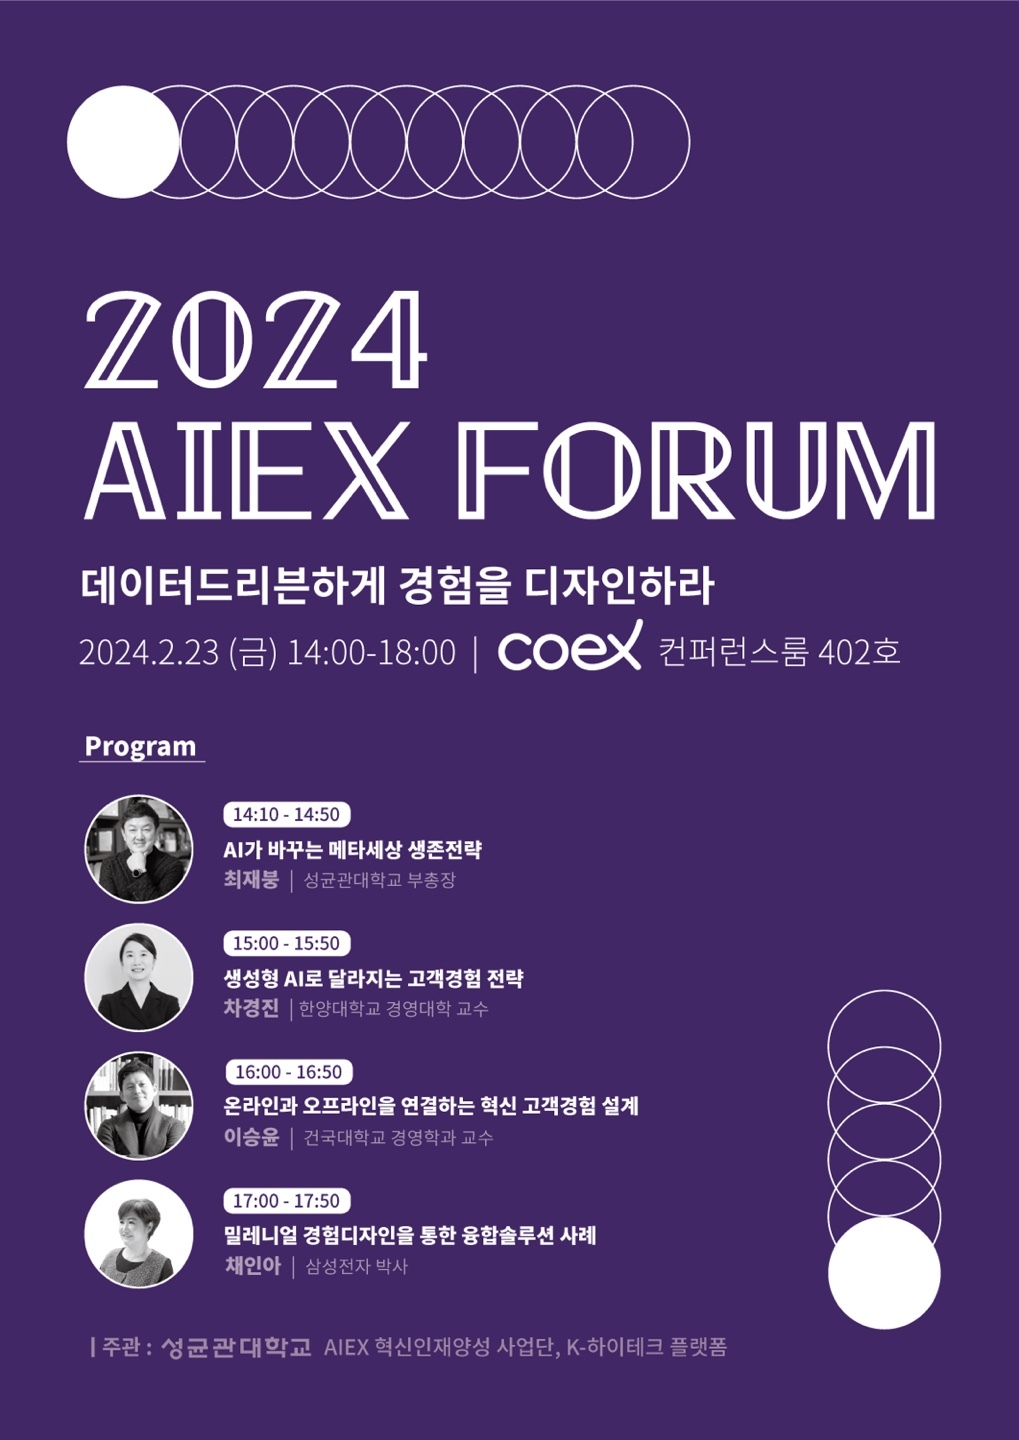 AIEX_FORUM_PROGRAM